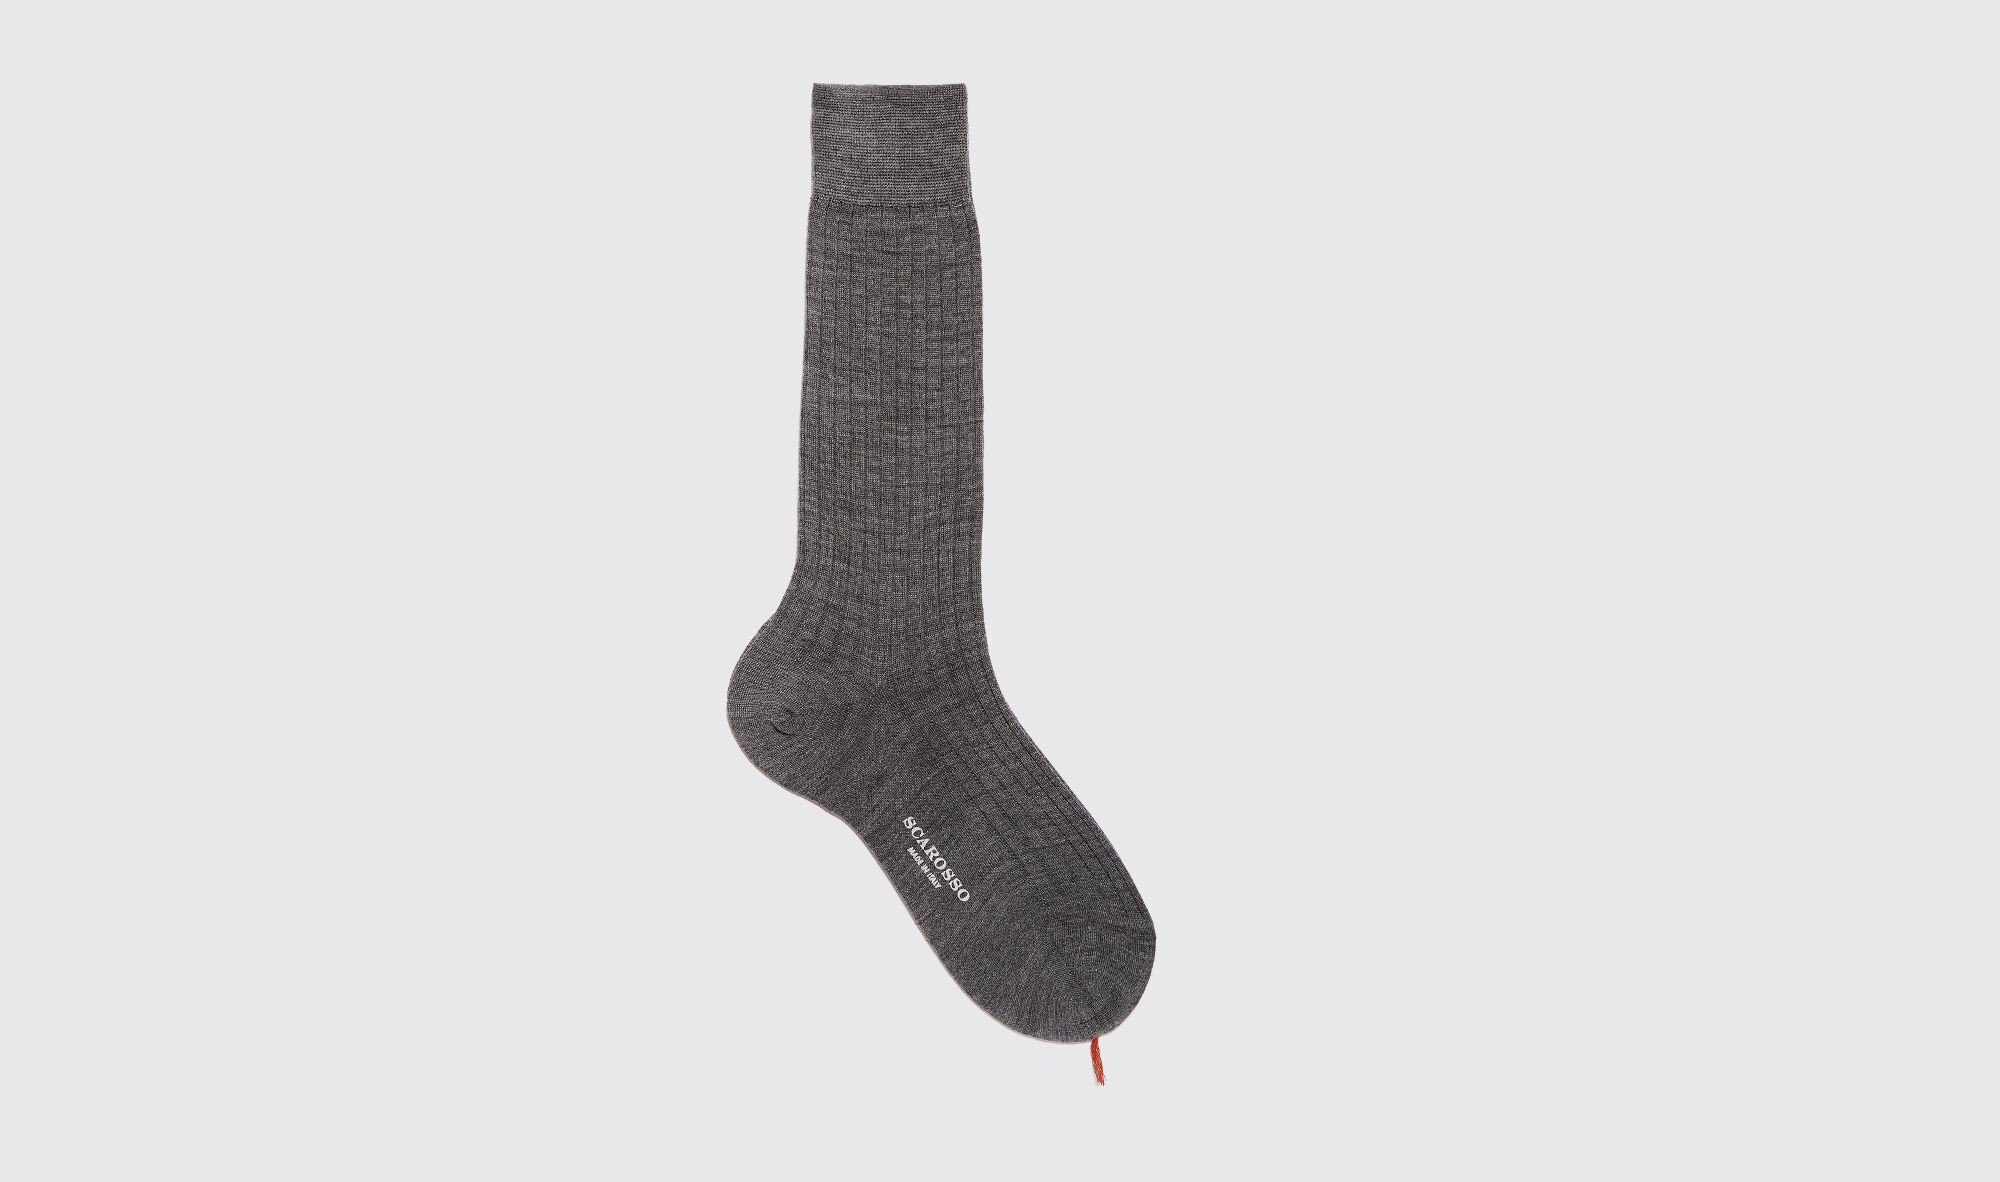 Scarosso Grey Wool Calf Socks - Uomo Prima Che Finiscano Grigio - Lana Merino 44-45